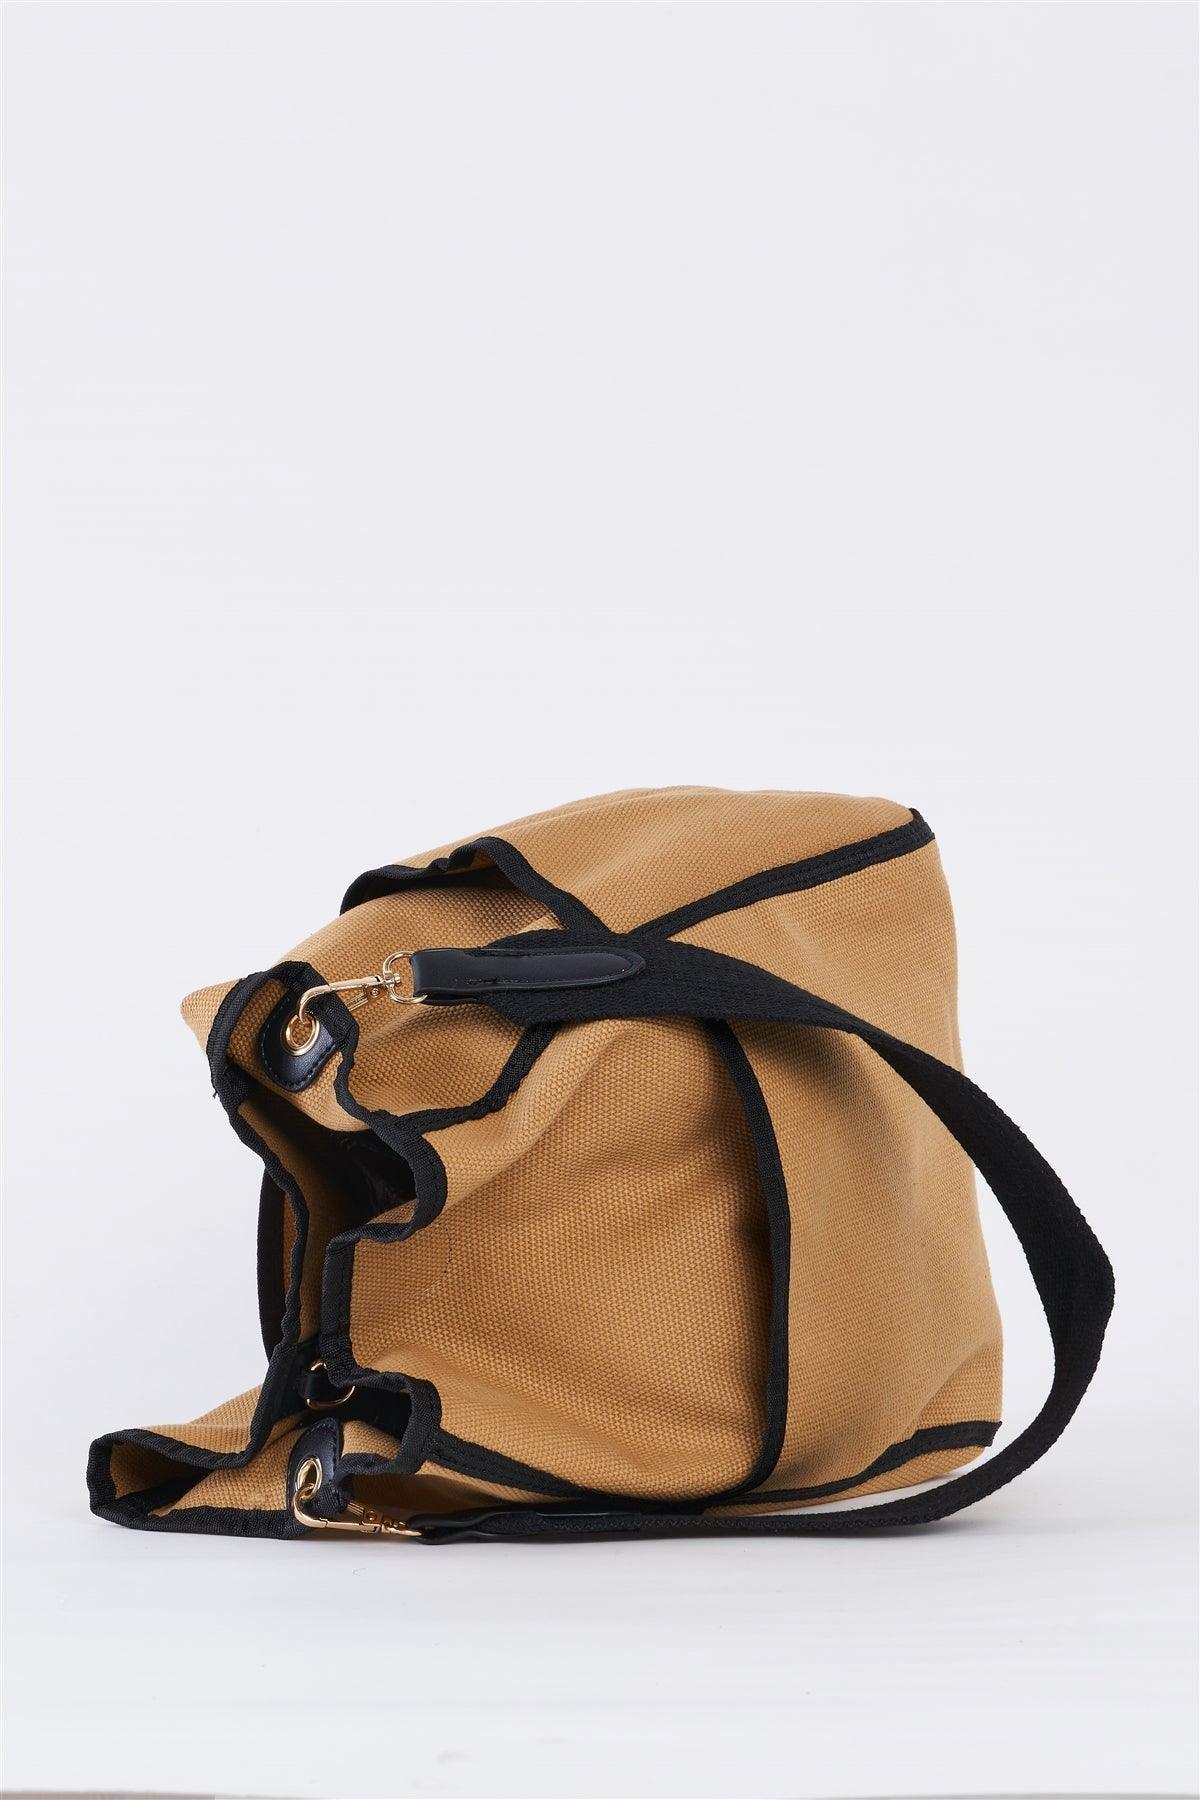 Khaki Canvas Hardware Belt Detail Shoulder Strap Tote Bag /3 Bags